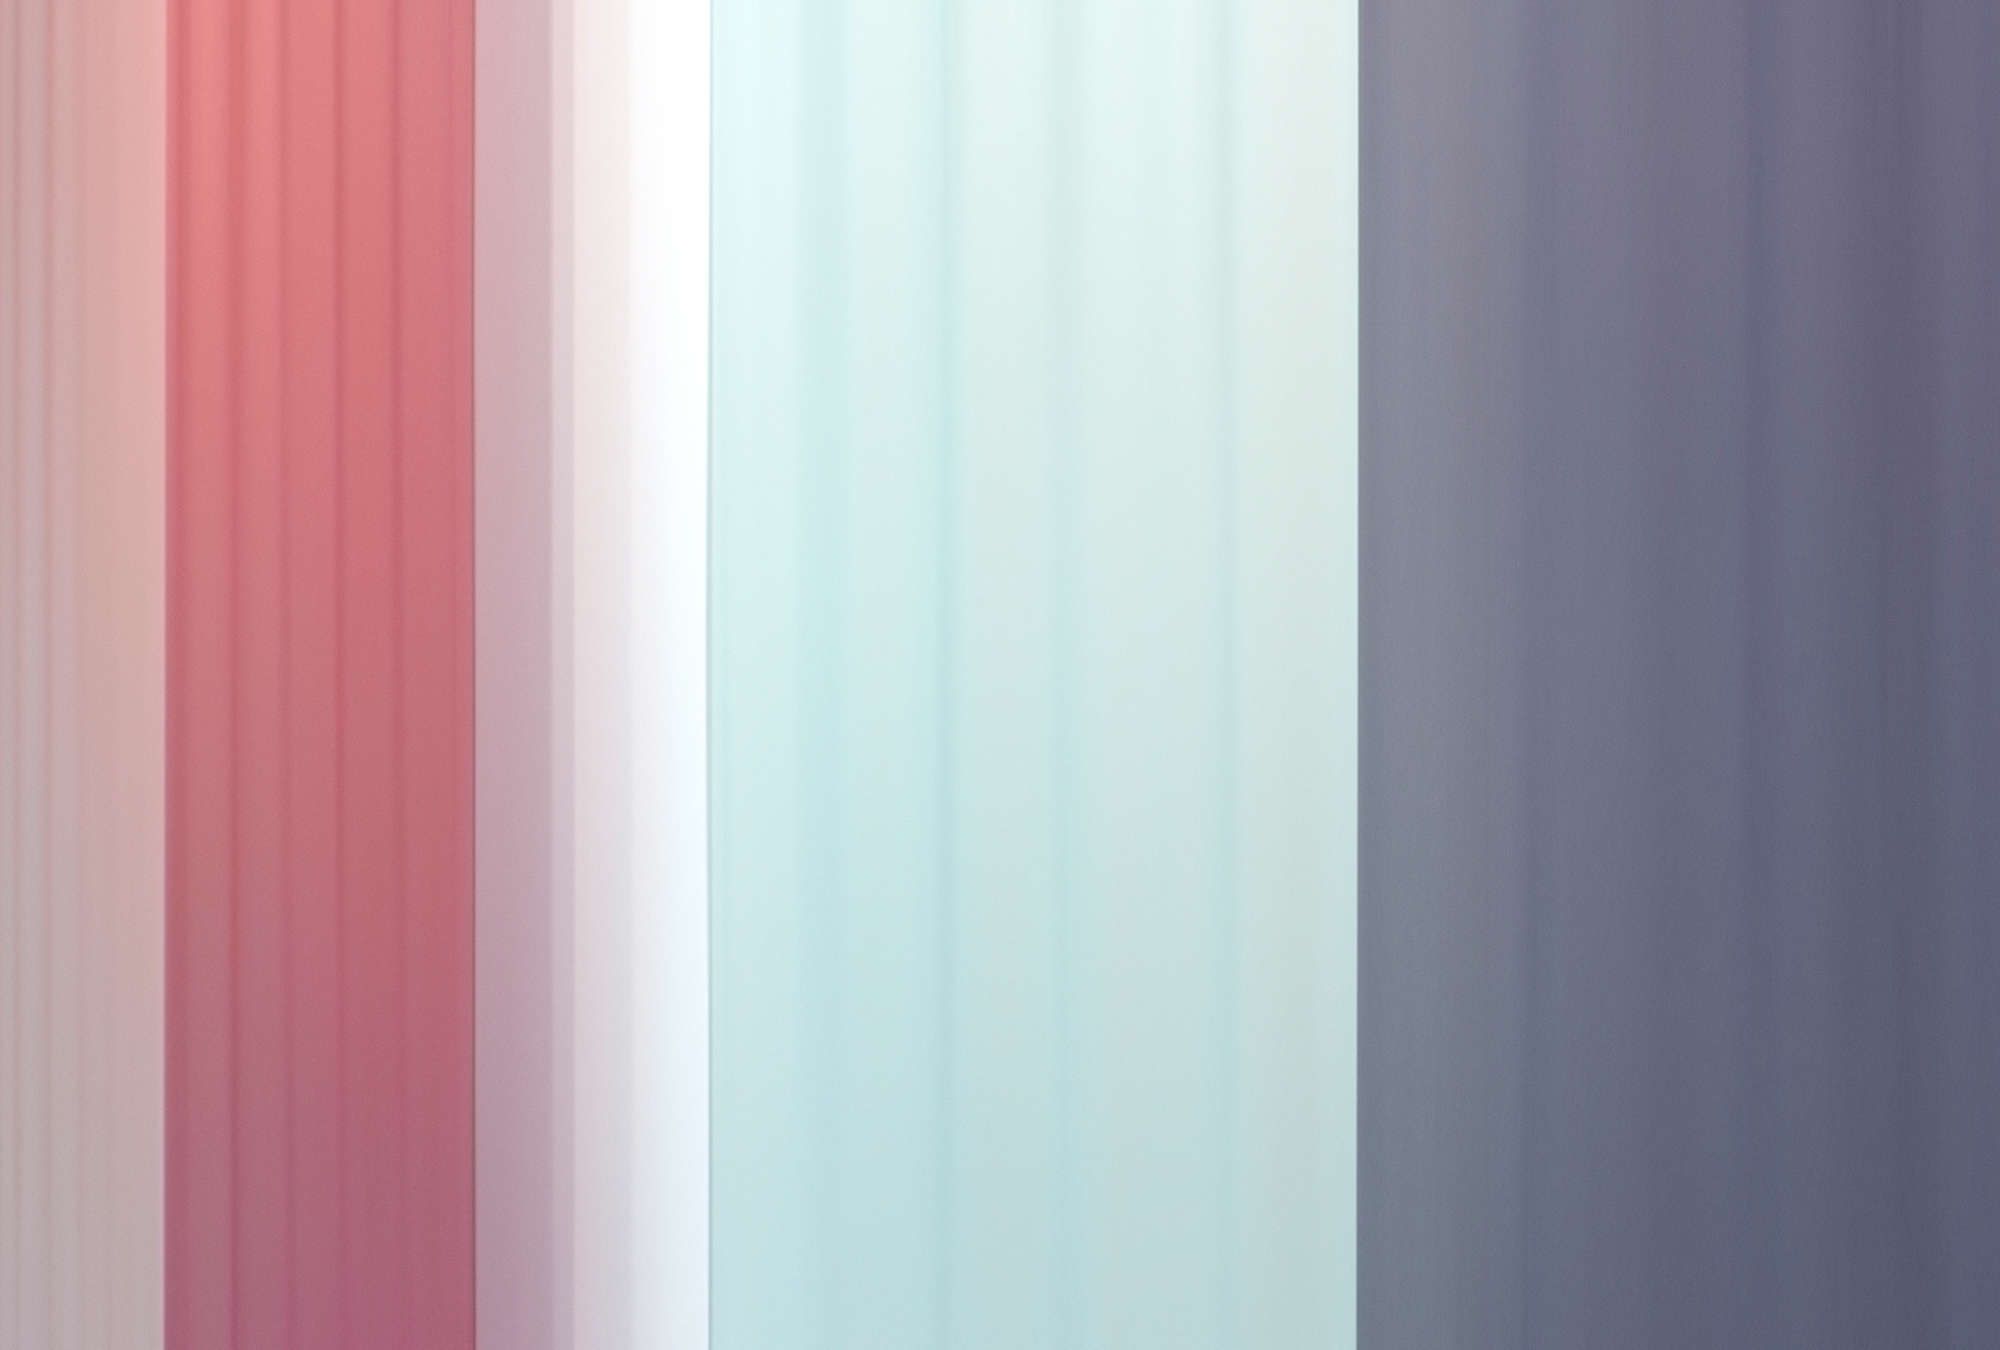             papier peint en papier »co-colores 2« - dégradé de couleurs à rayures - rose, bleu clair bleu foncé | Intissé lisse, légèrement nacré
        